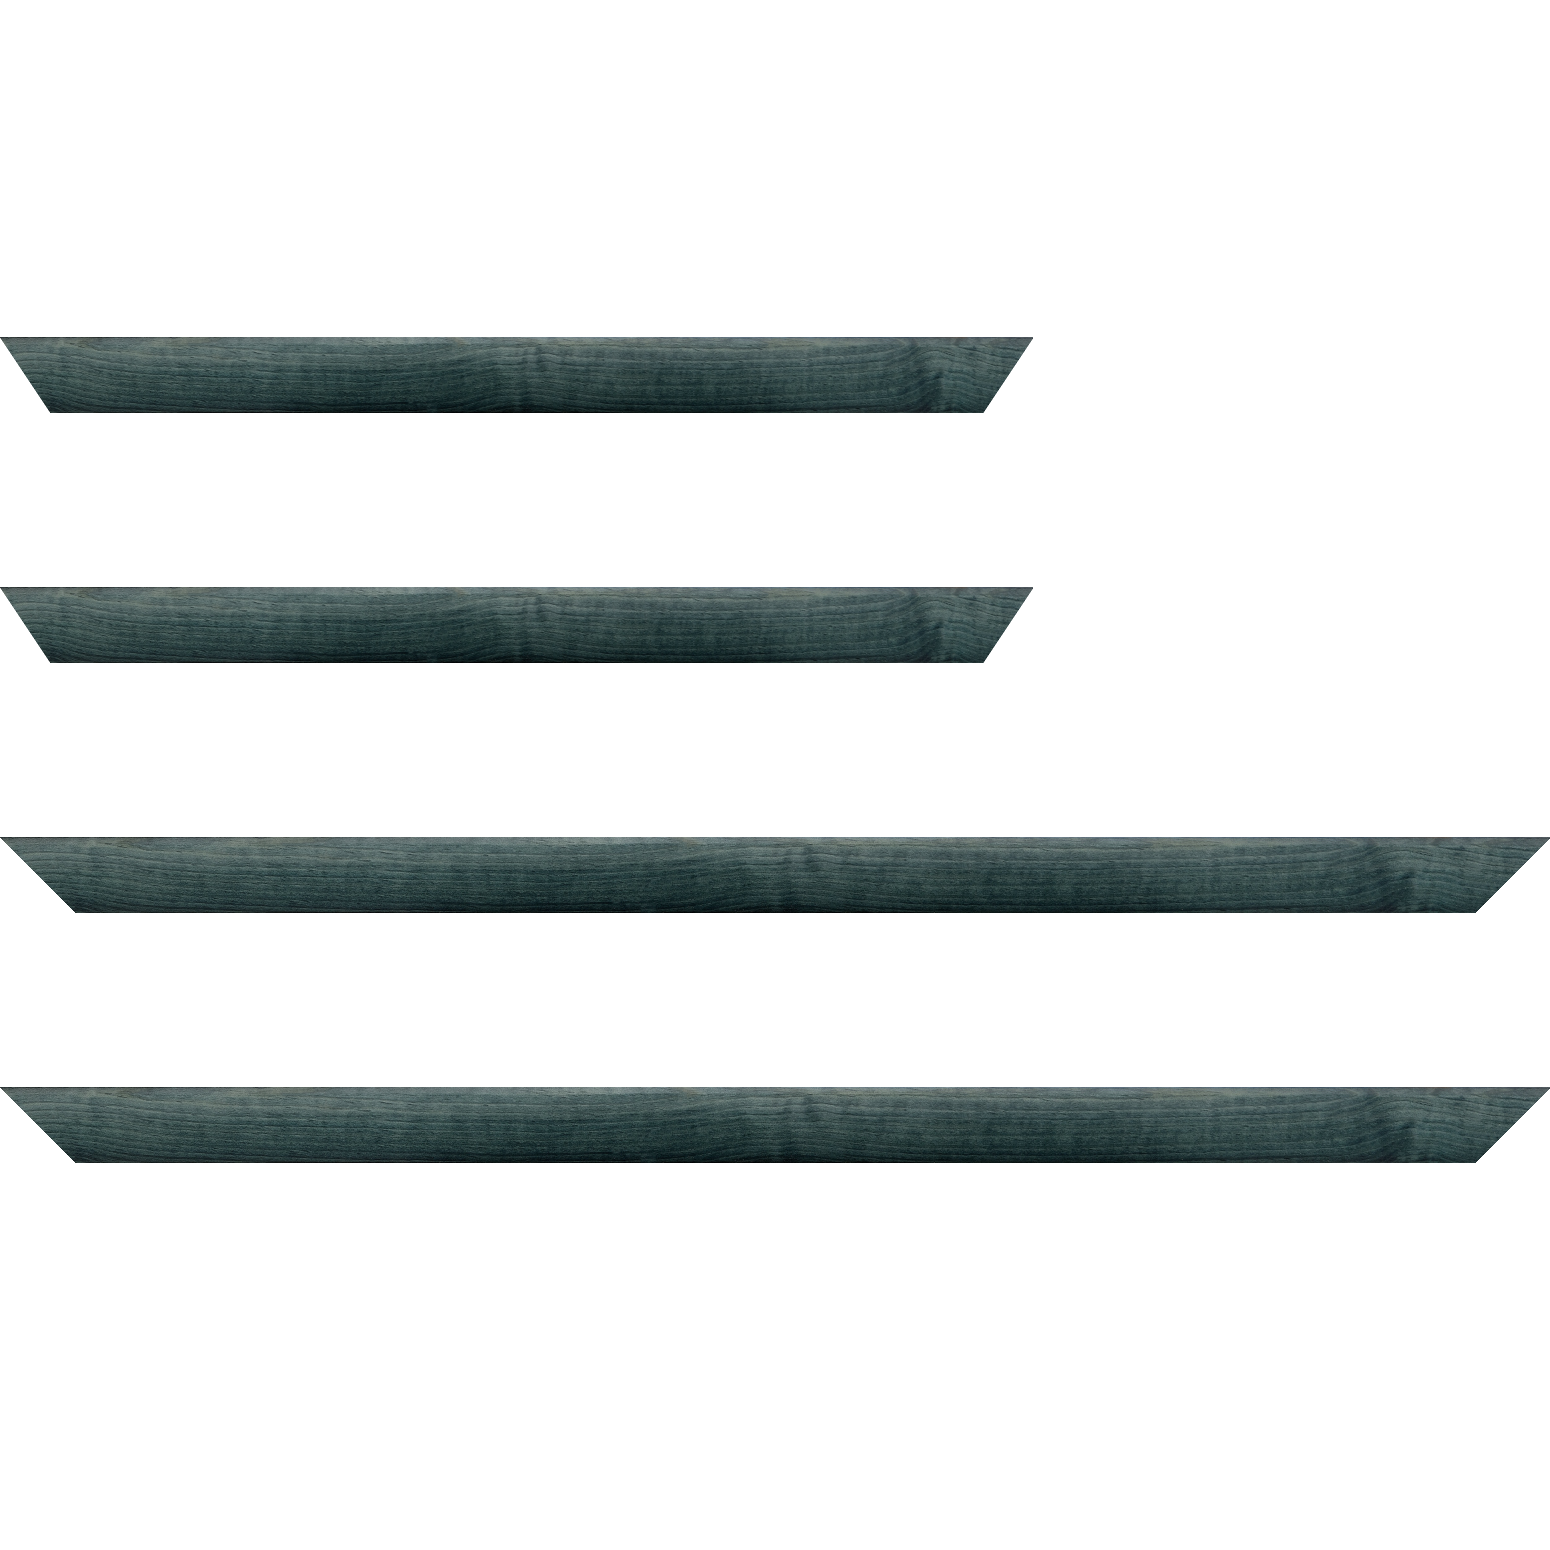 Baguette bois profil arrondi en pente plongeant largeur 2.4cm couleur bleu turquoise foncé finition vernis brillant,veine du bois  apparent (pin) , - 24x30